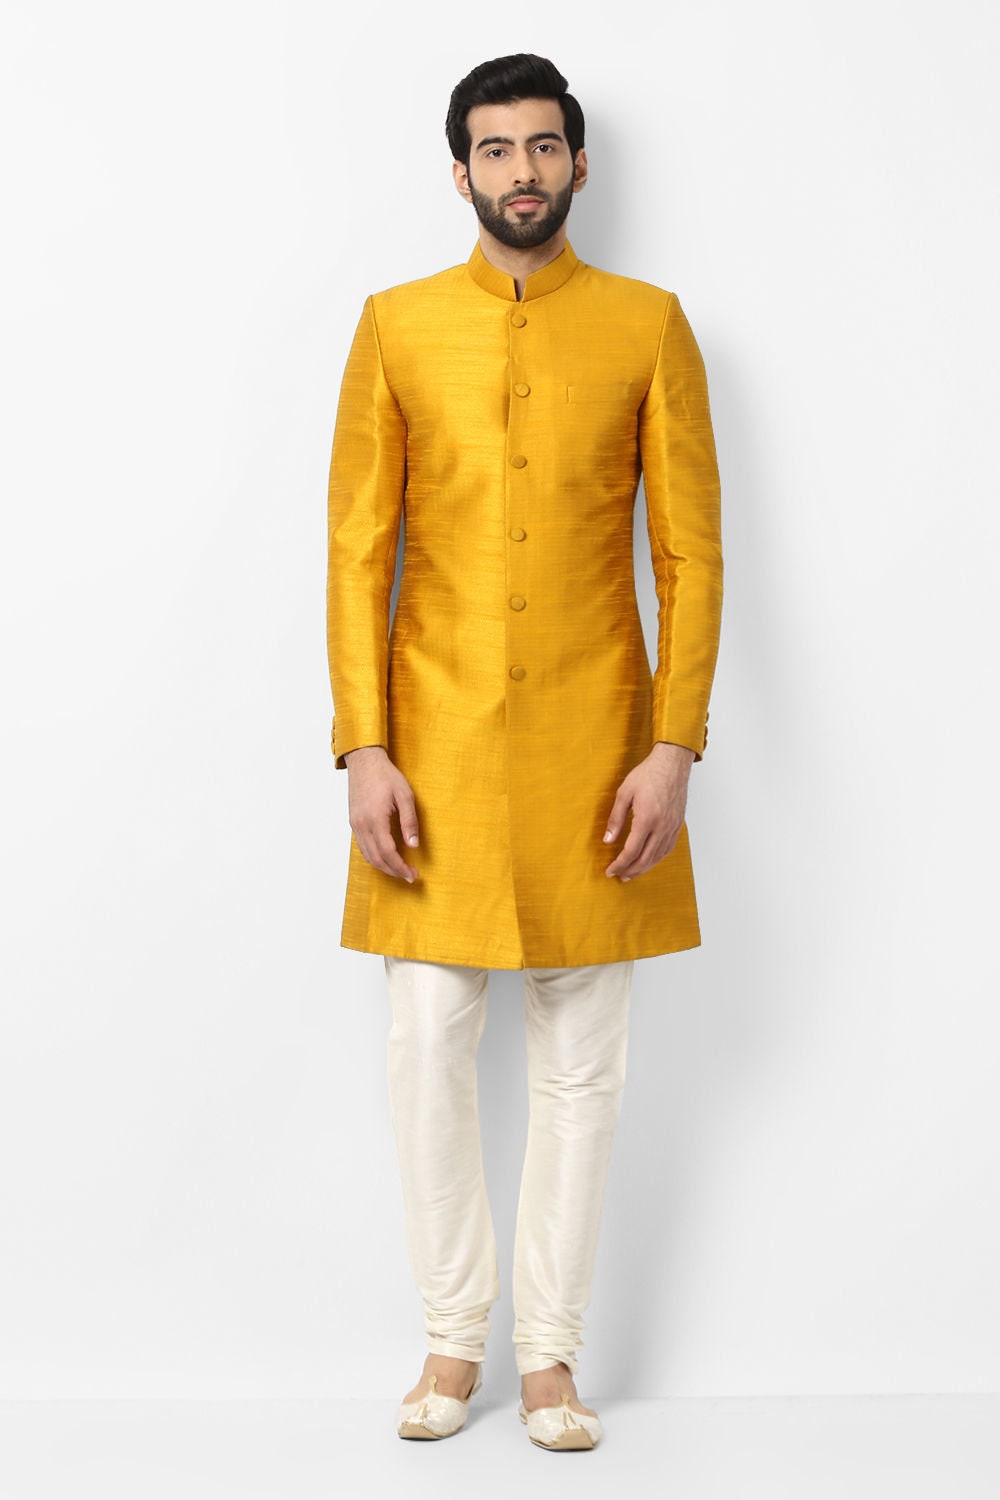 Mens Yellow Cotton Jodhpuri Hunting Shirt